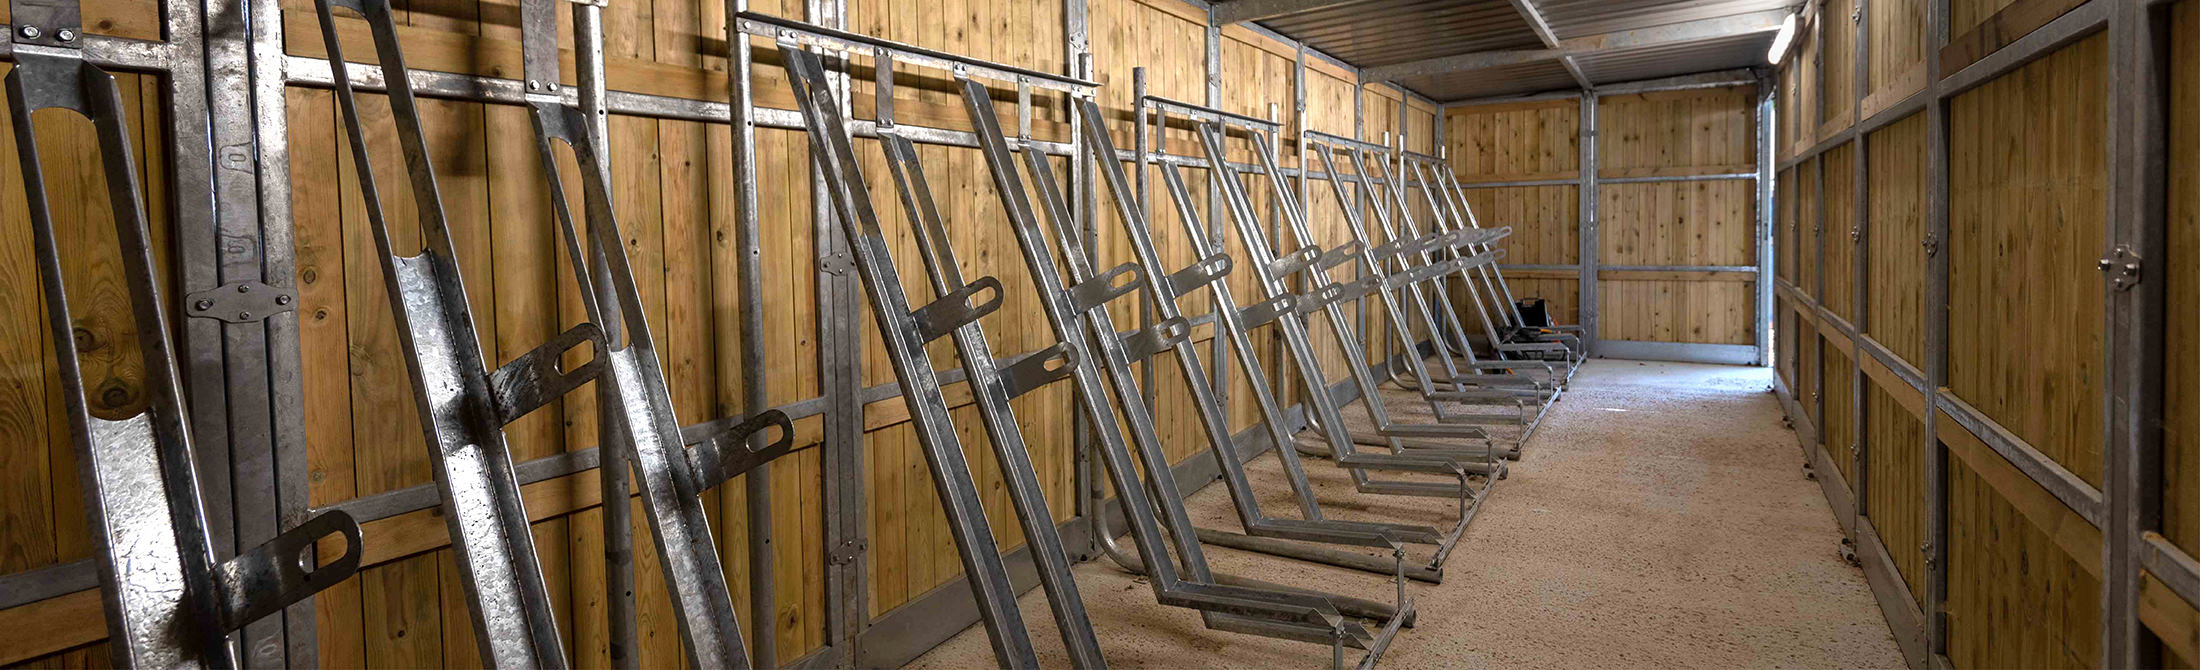 Semi-vertical bike racks in bike store